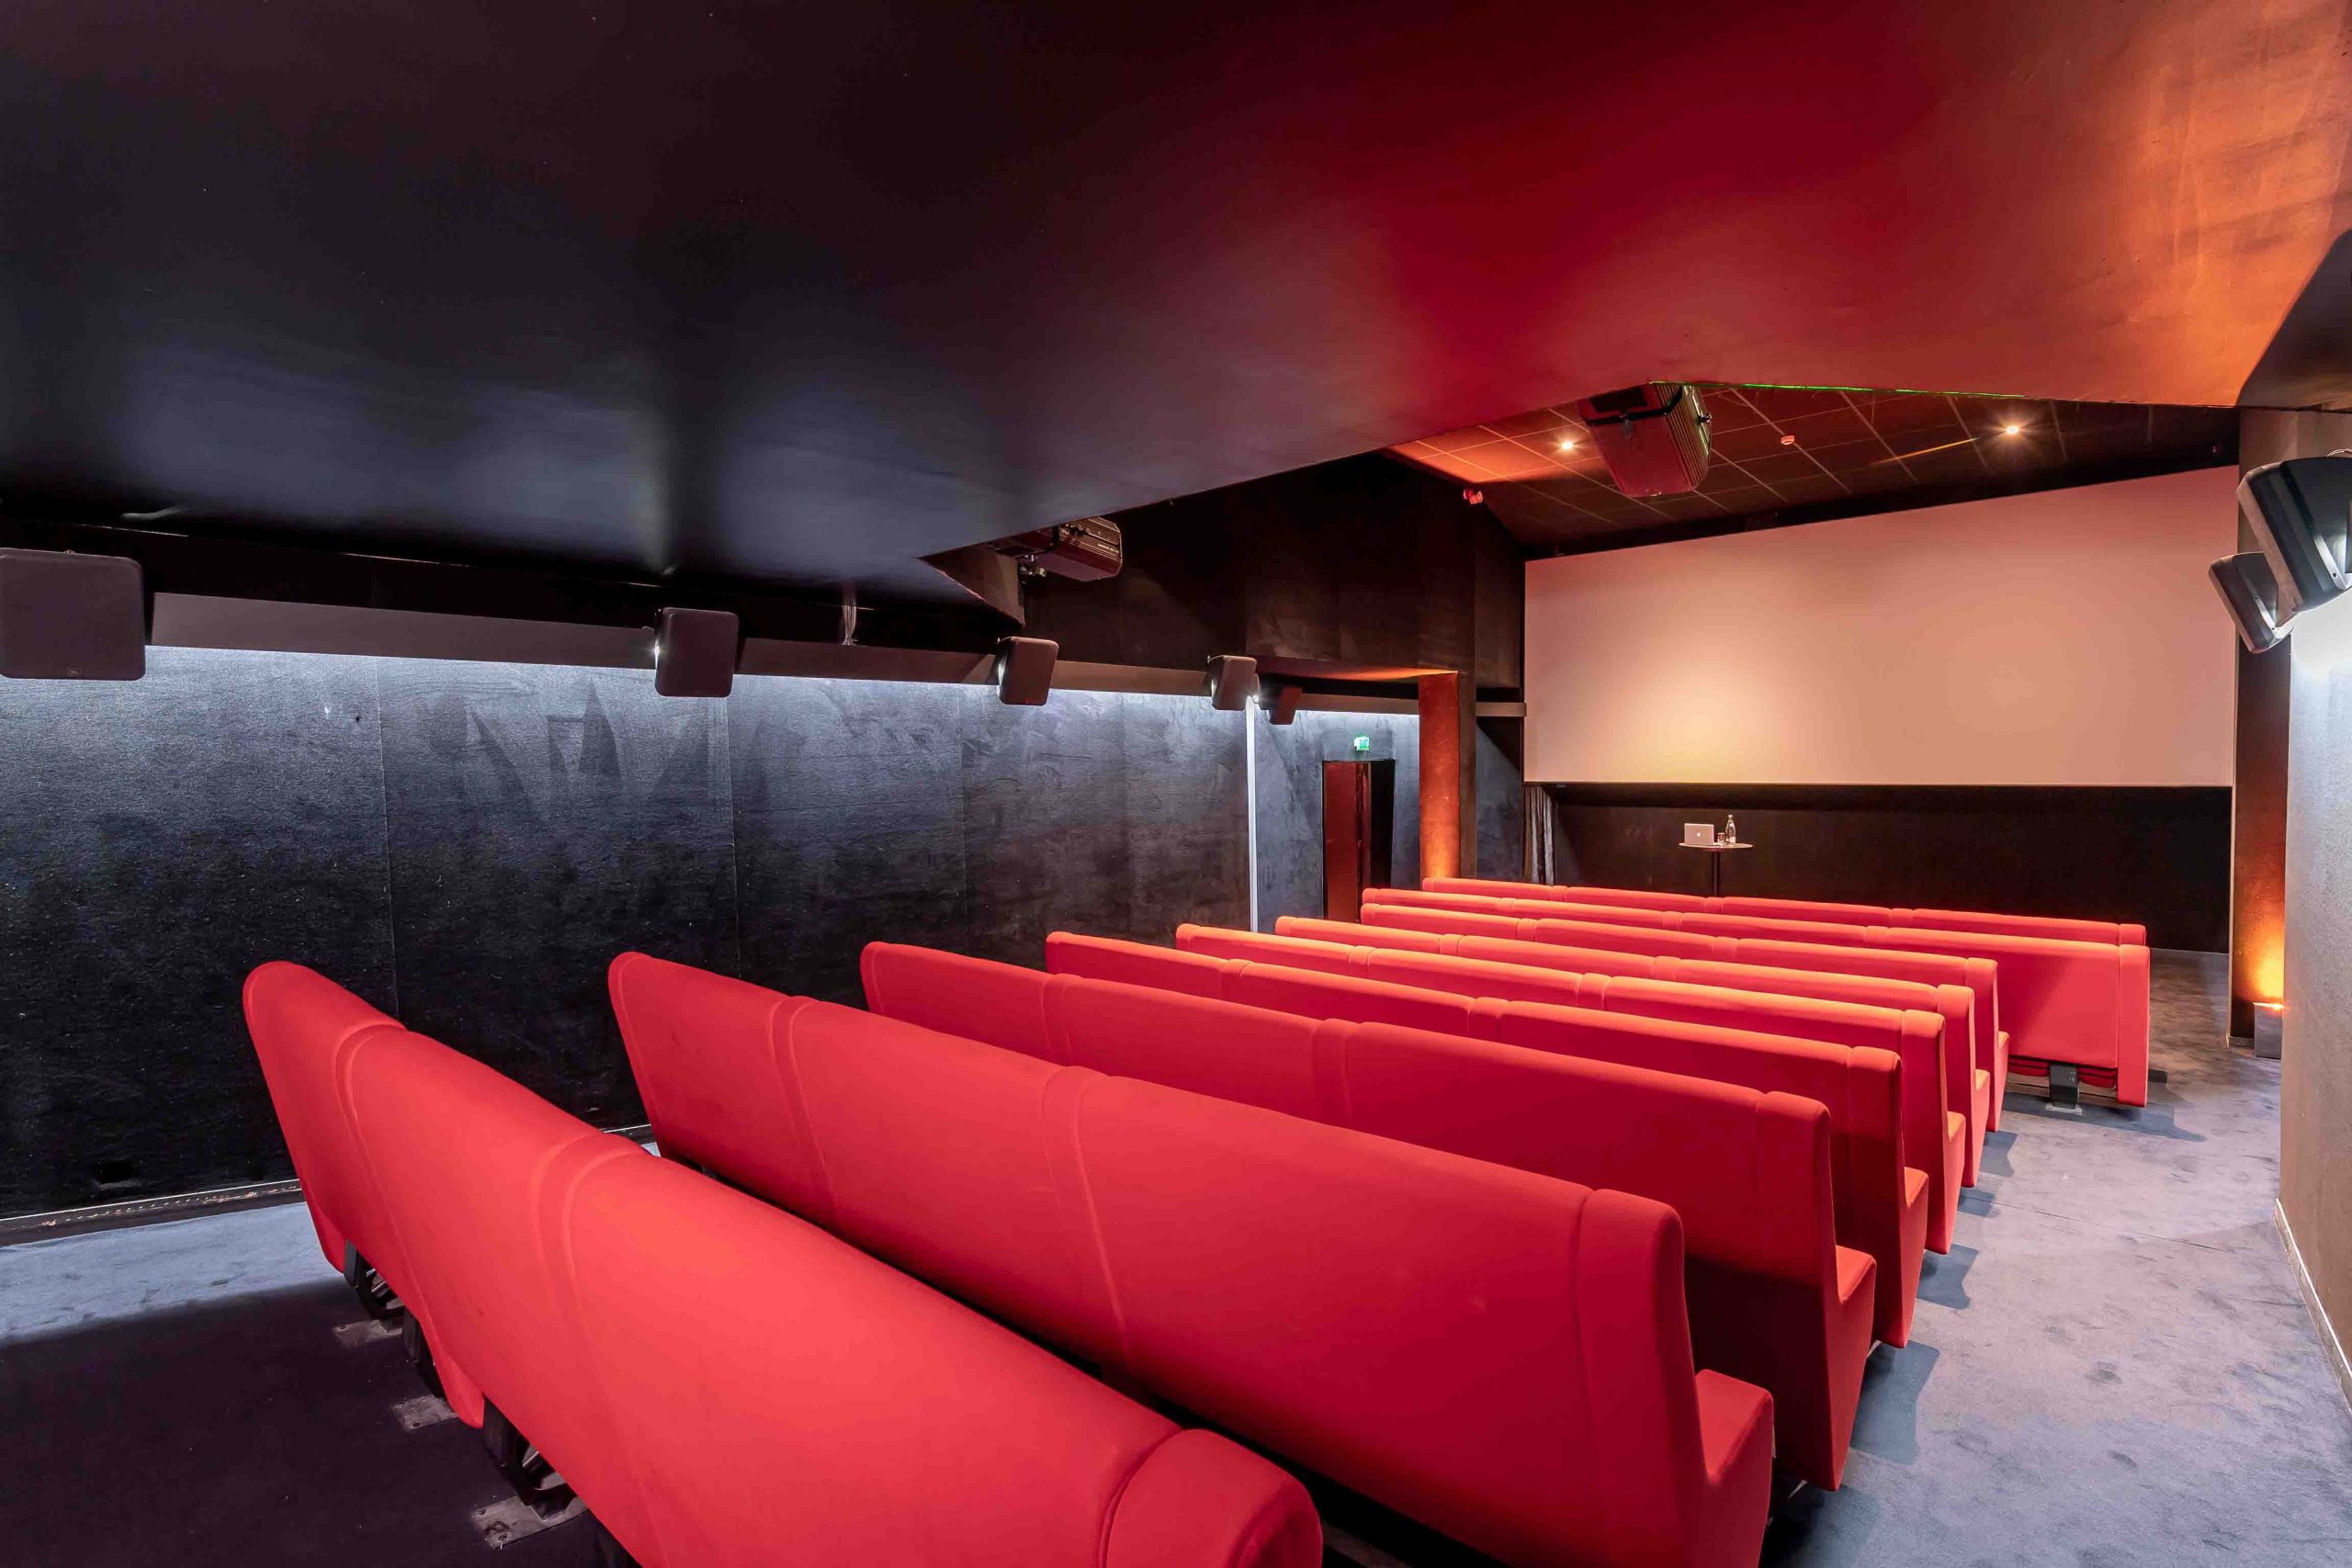 YOYO_Madame cinema_empty projection room